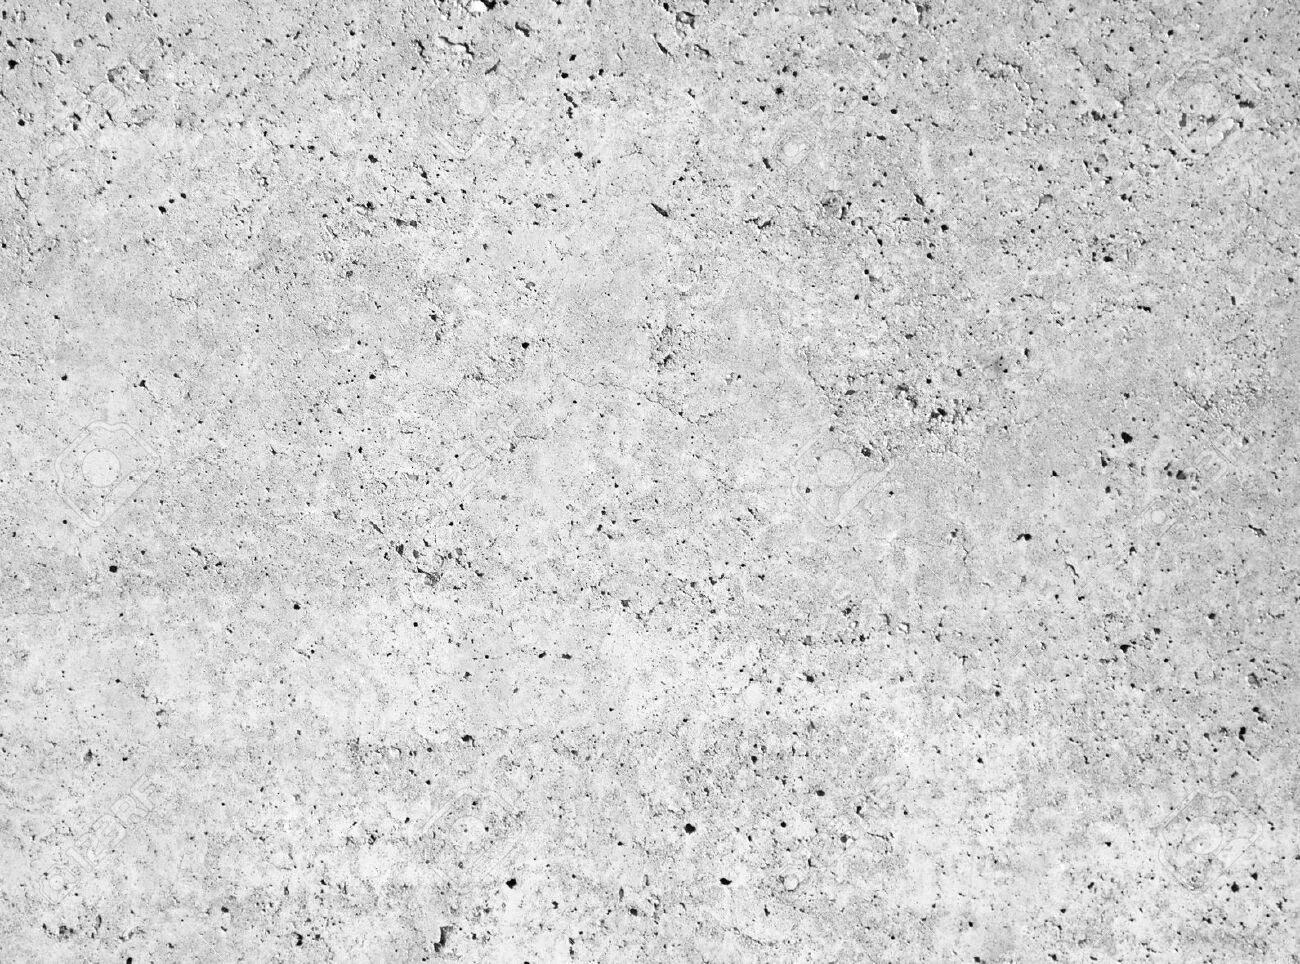 White concrete. Бетон опалубка текстура. Бетон опалубка фактура. Бетон белый текстура бесшовная. Текстура бетона со следами опалубки.